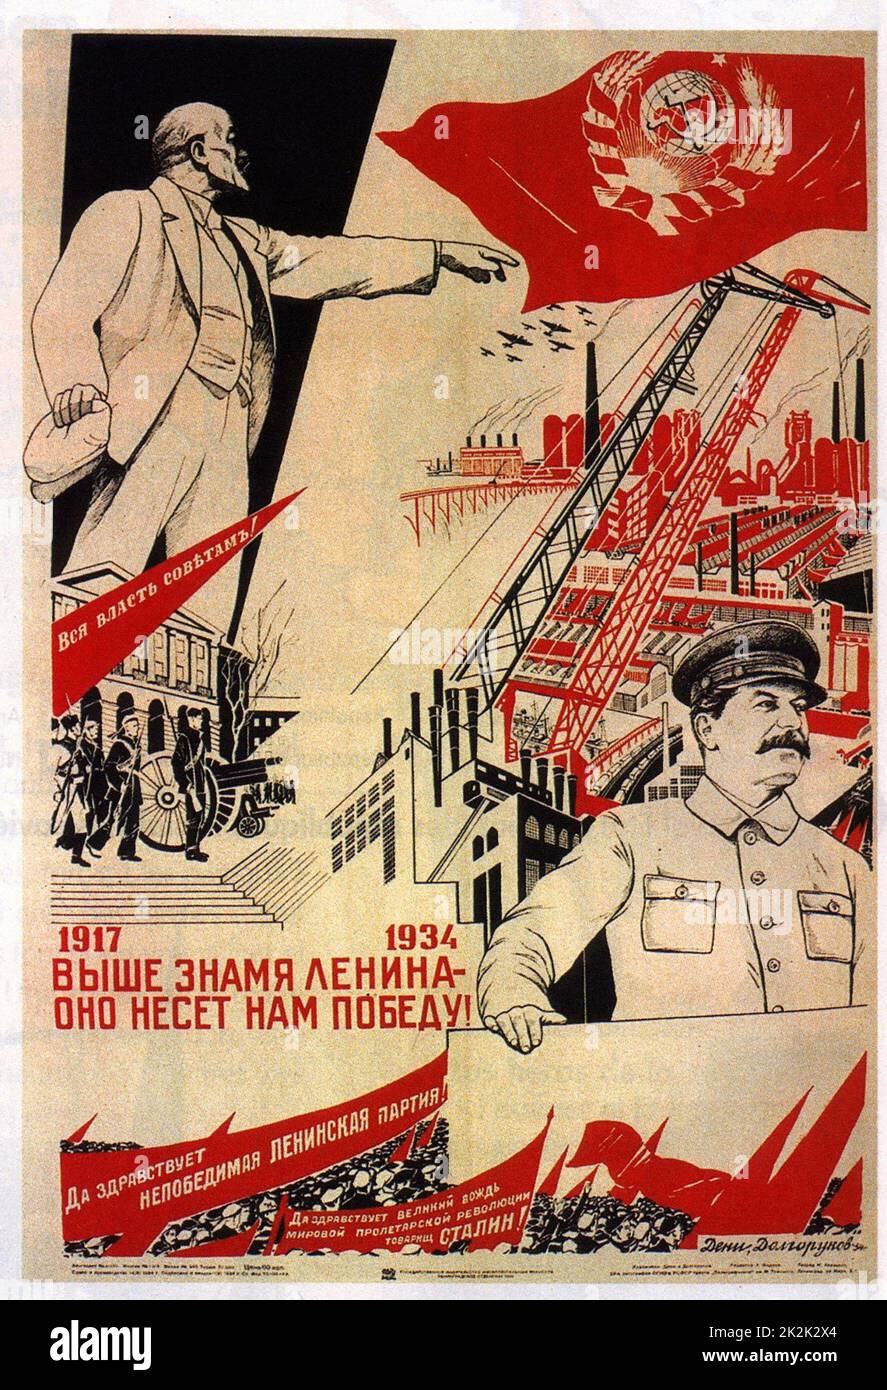 Affittacamere de propagande du 17e congrès du parti Communiste (1934) Foto Stock